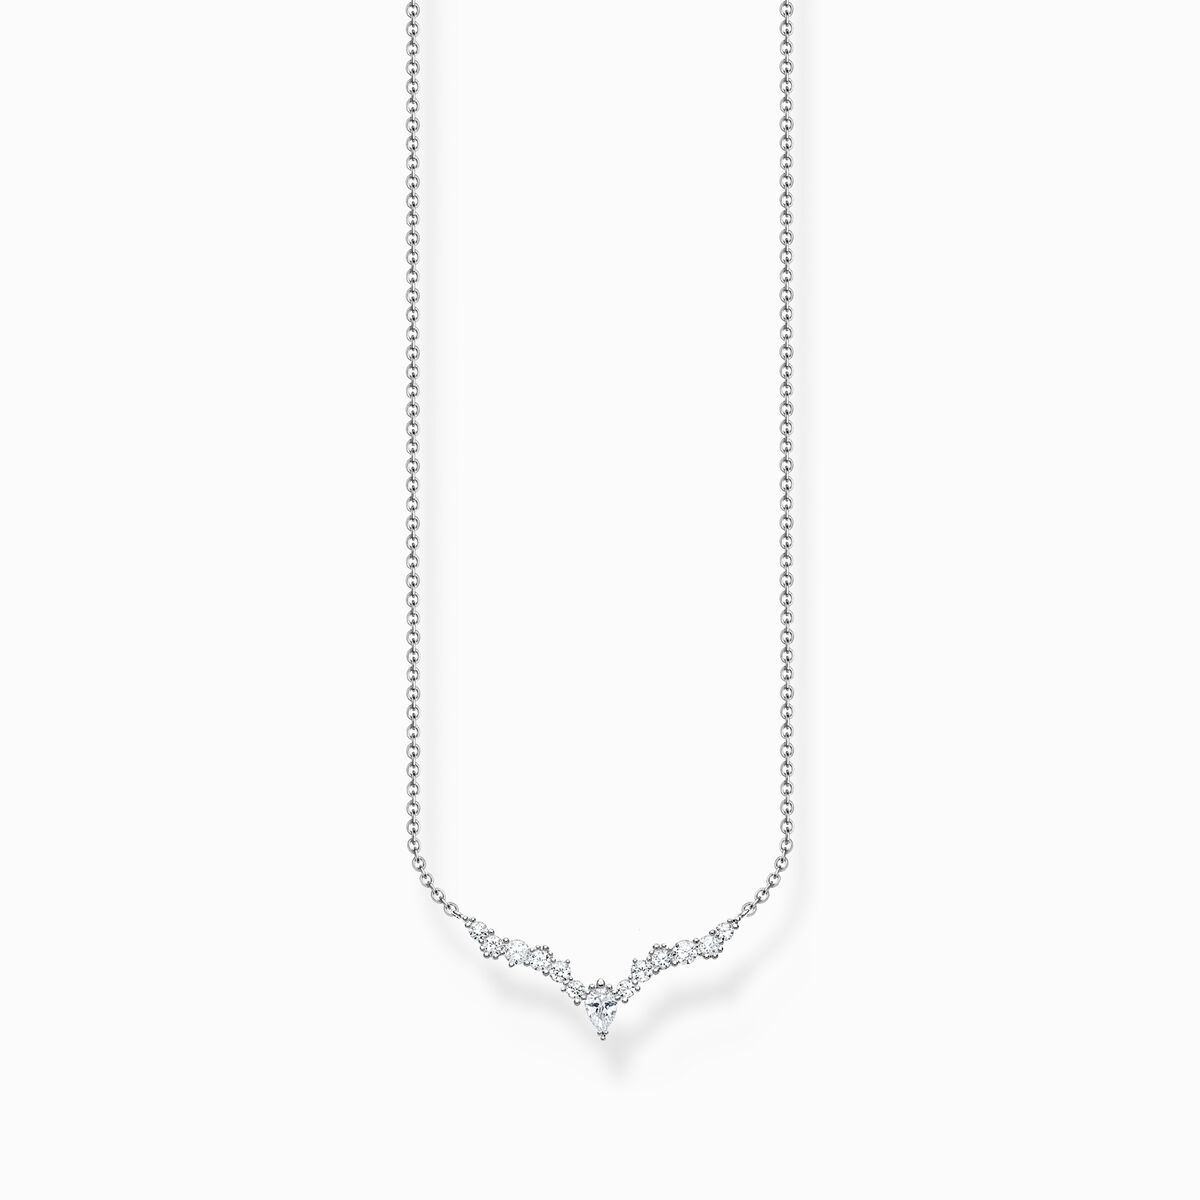 Halskette mit weißen Zirkonia-Steinen, Silber SABO | THOMAS